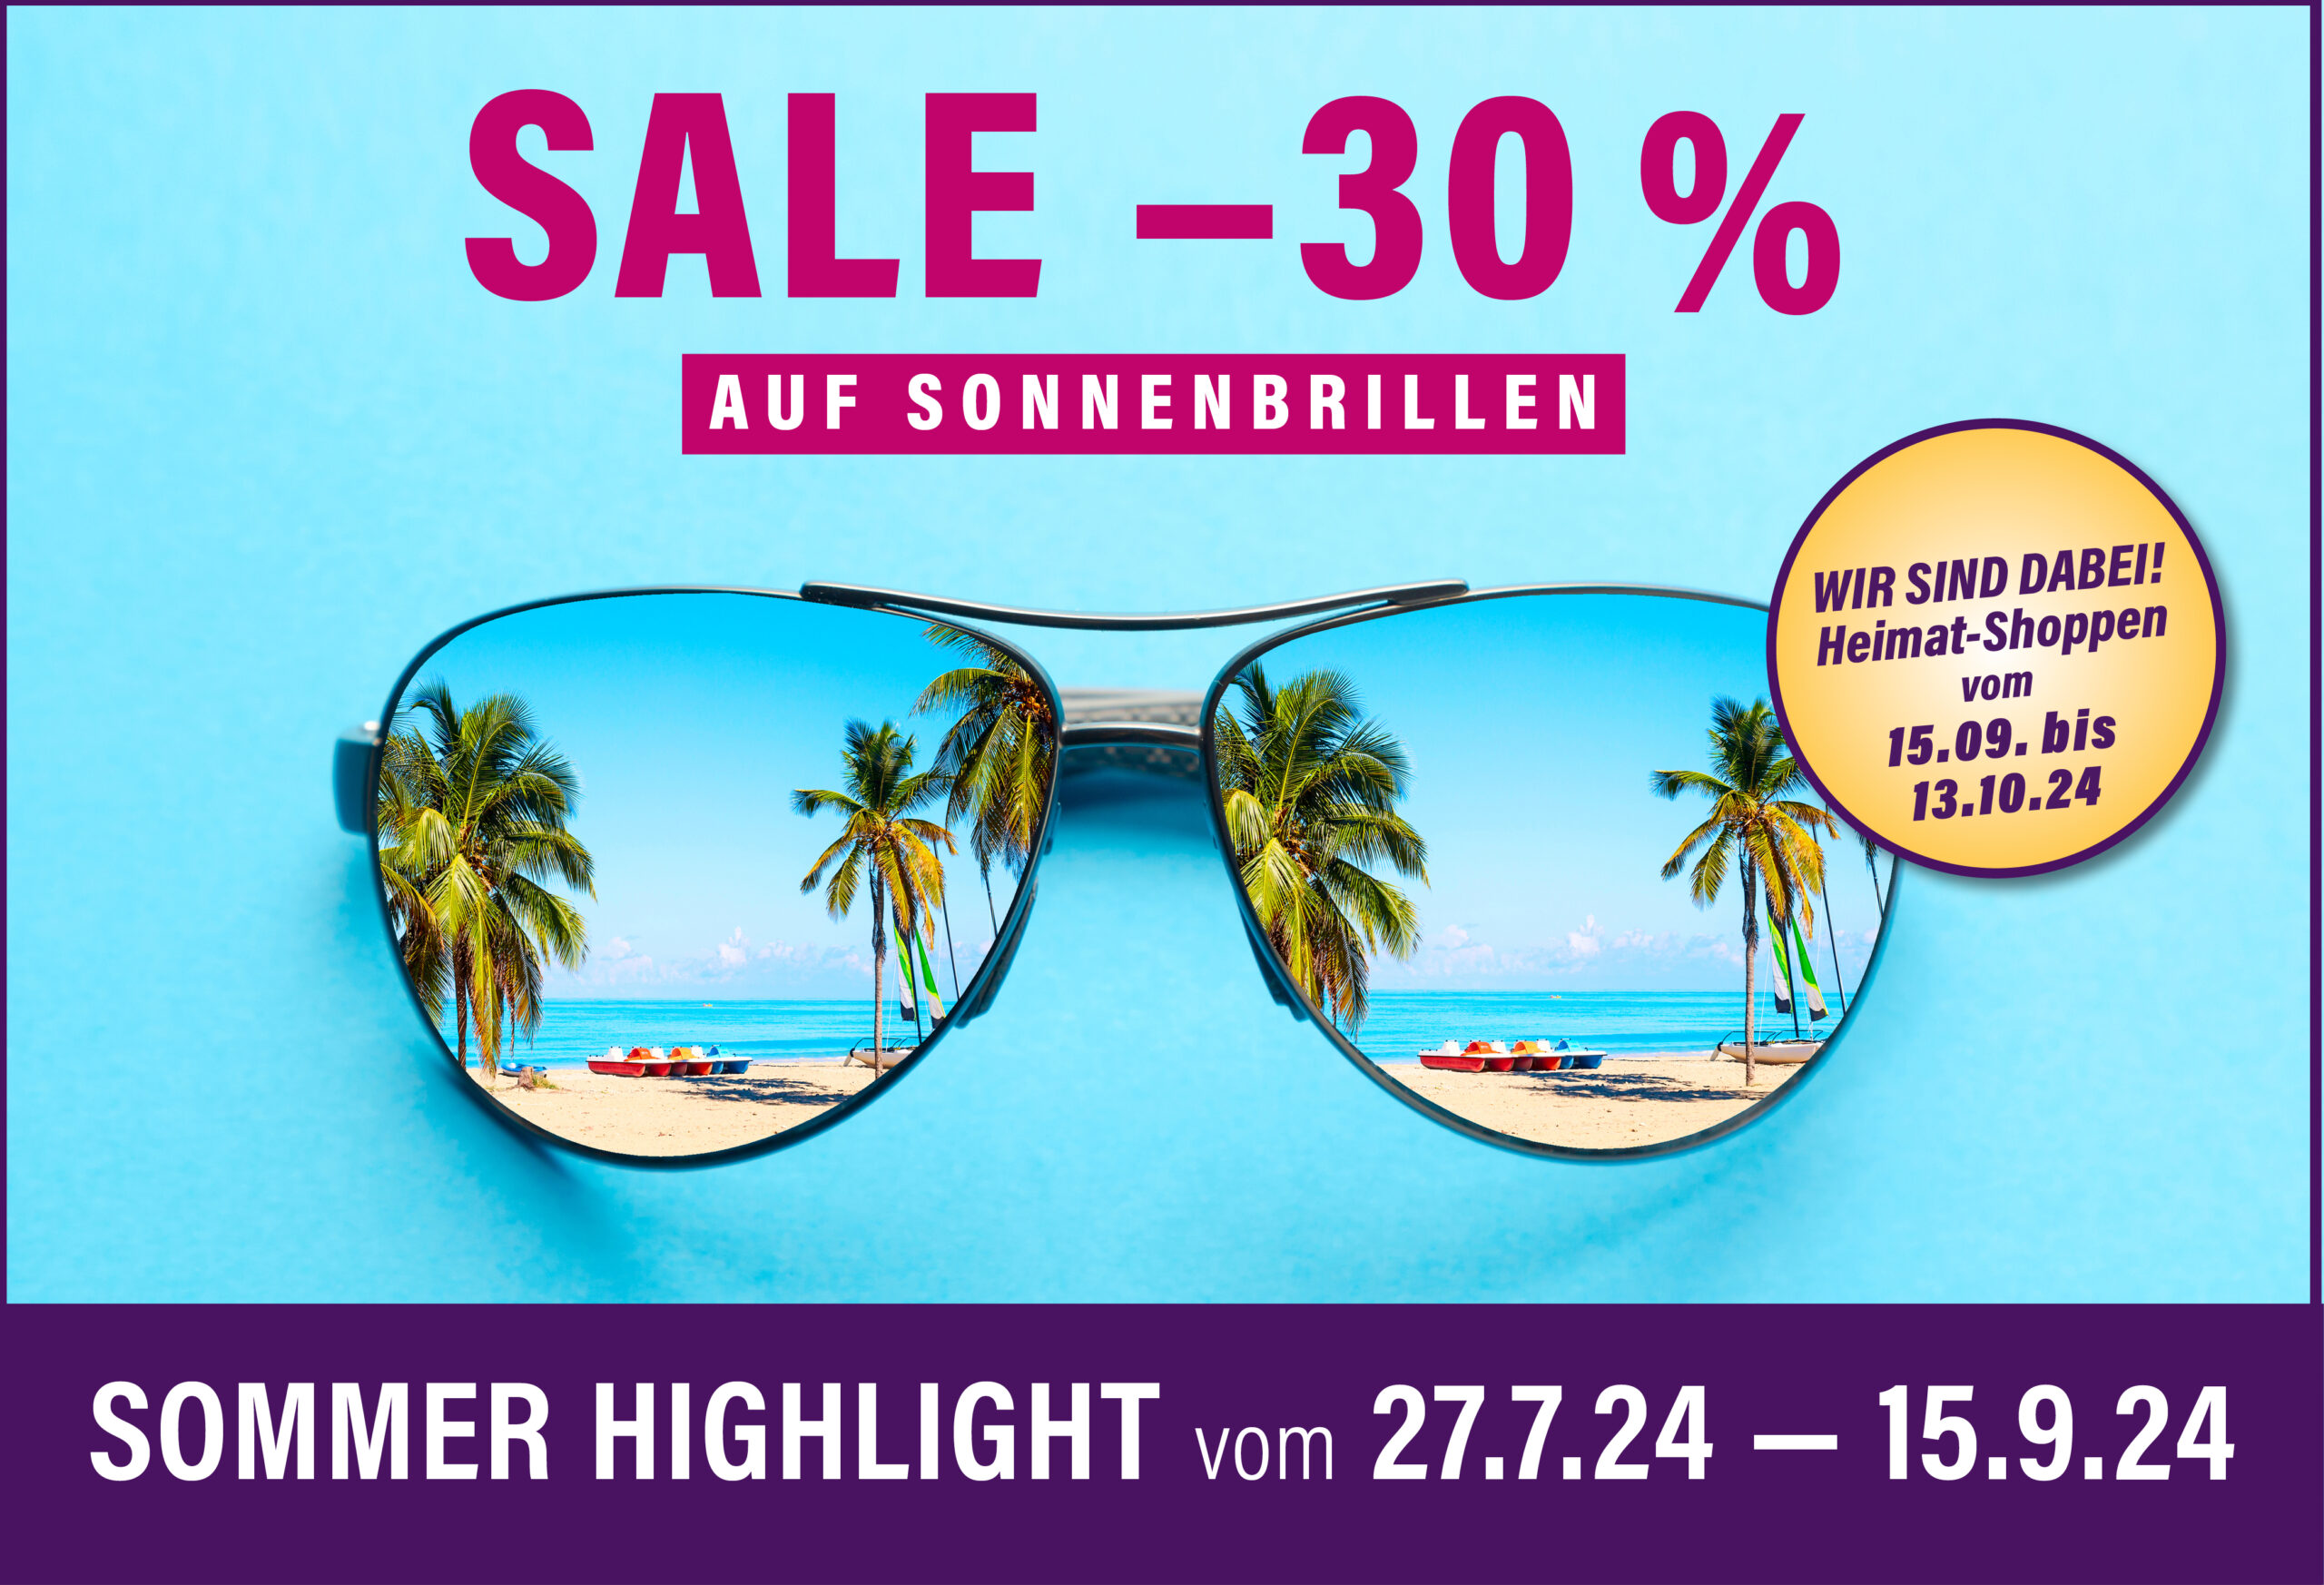 Sommer Highlight vom 27.7.24 — 15.9.24. 30 % SALE auf Sonnenbrillen.